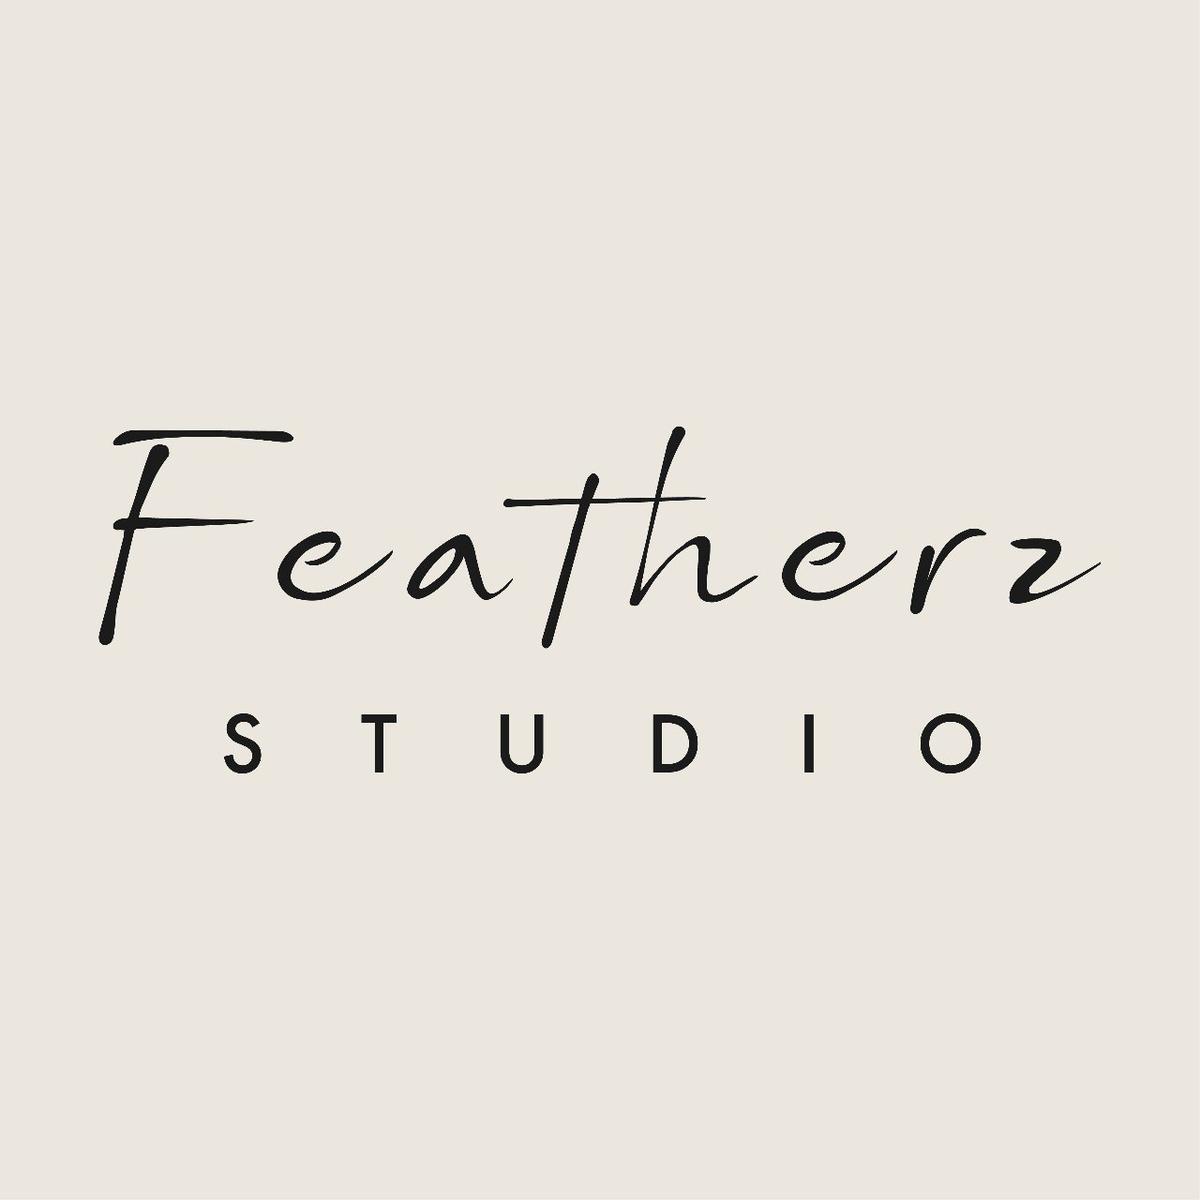 Featherz Studio's images